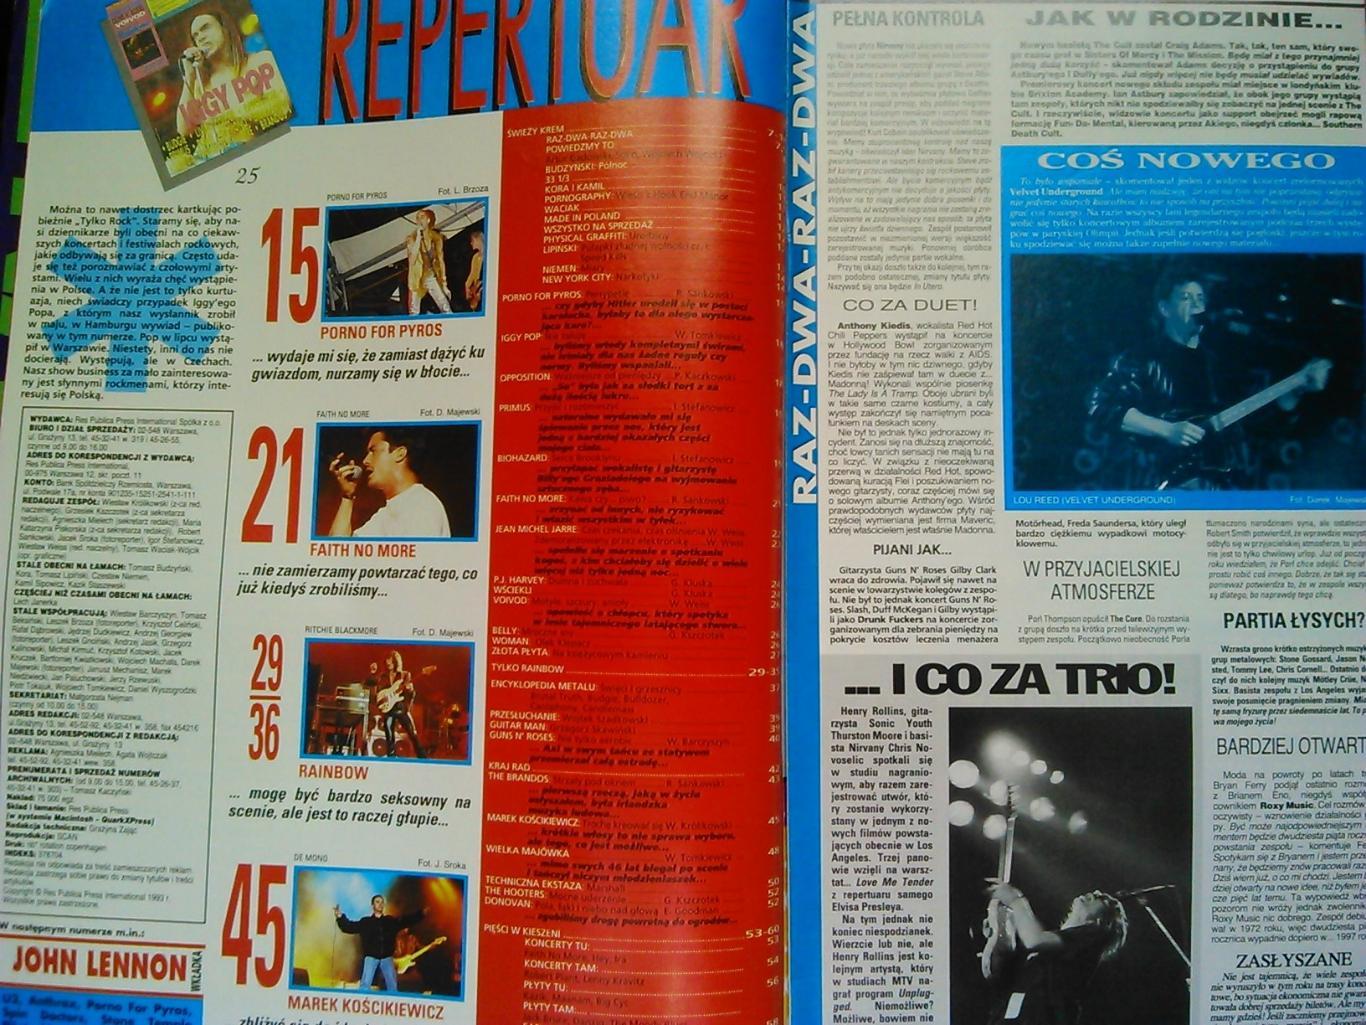 TYLKO ROCK (Только Рок) №5/1993/(Польша). Оптом скидки до 50%. 1